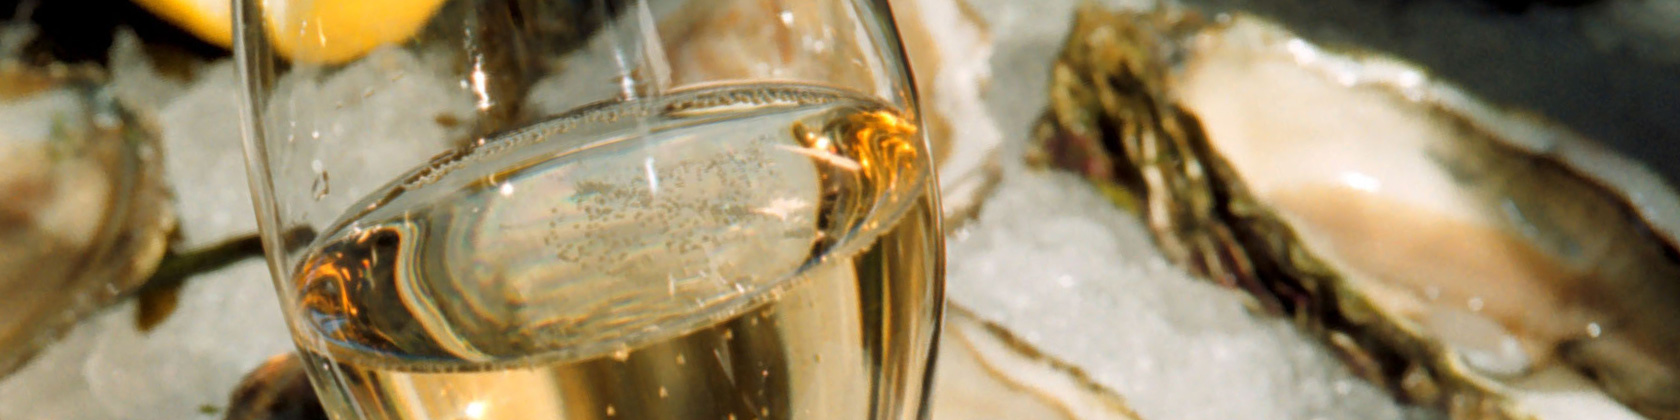 Champagner und Austern. Foto: Champagner Büro